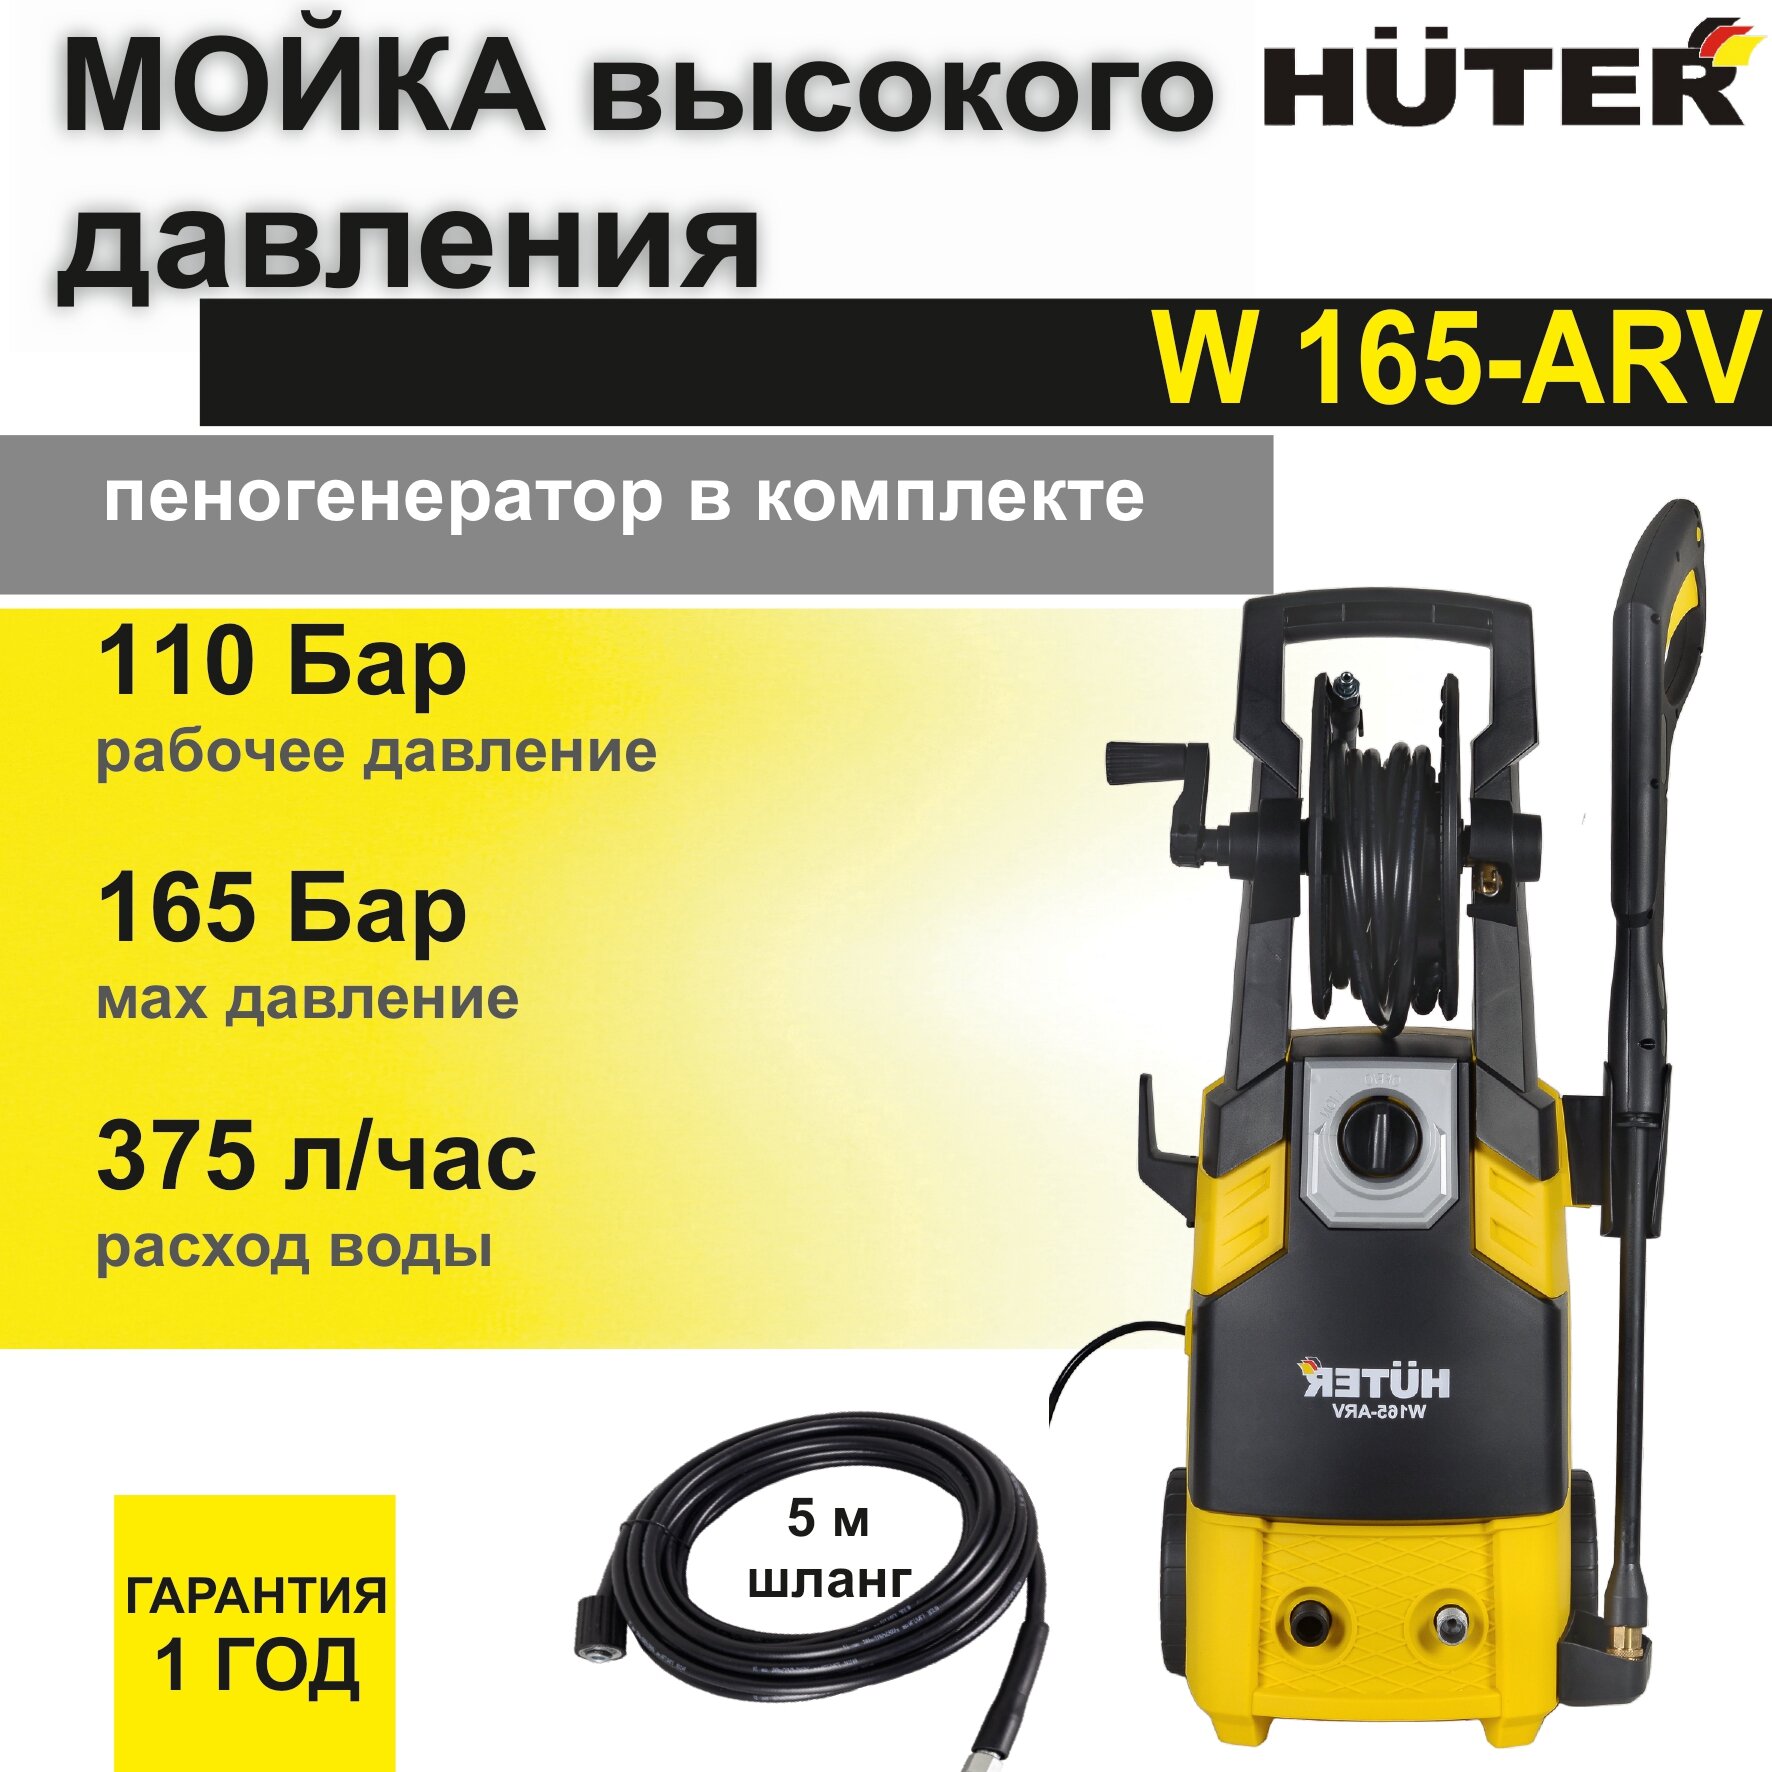 Мойка высокого давления Huter W165-ARV (165 бар, шланг 5 м, 1900 Вт, 375 л/ч , встроенный пеногенератор) автомойка / минимойка / для дома и дачи